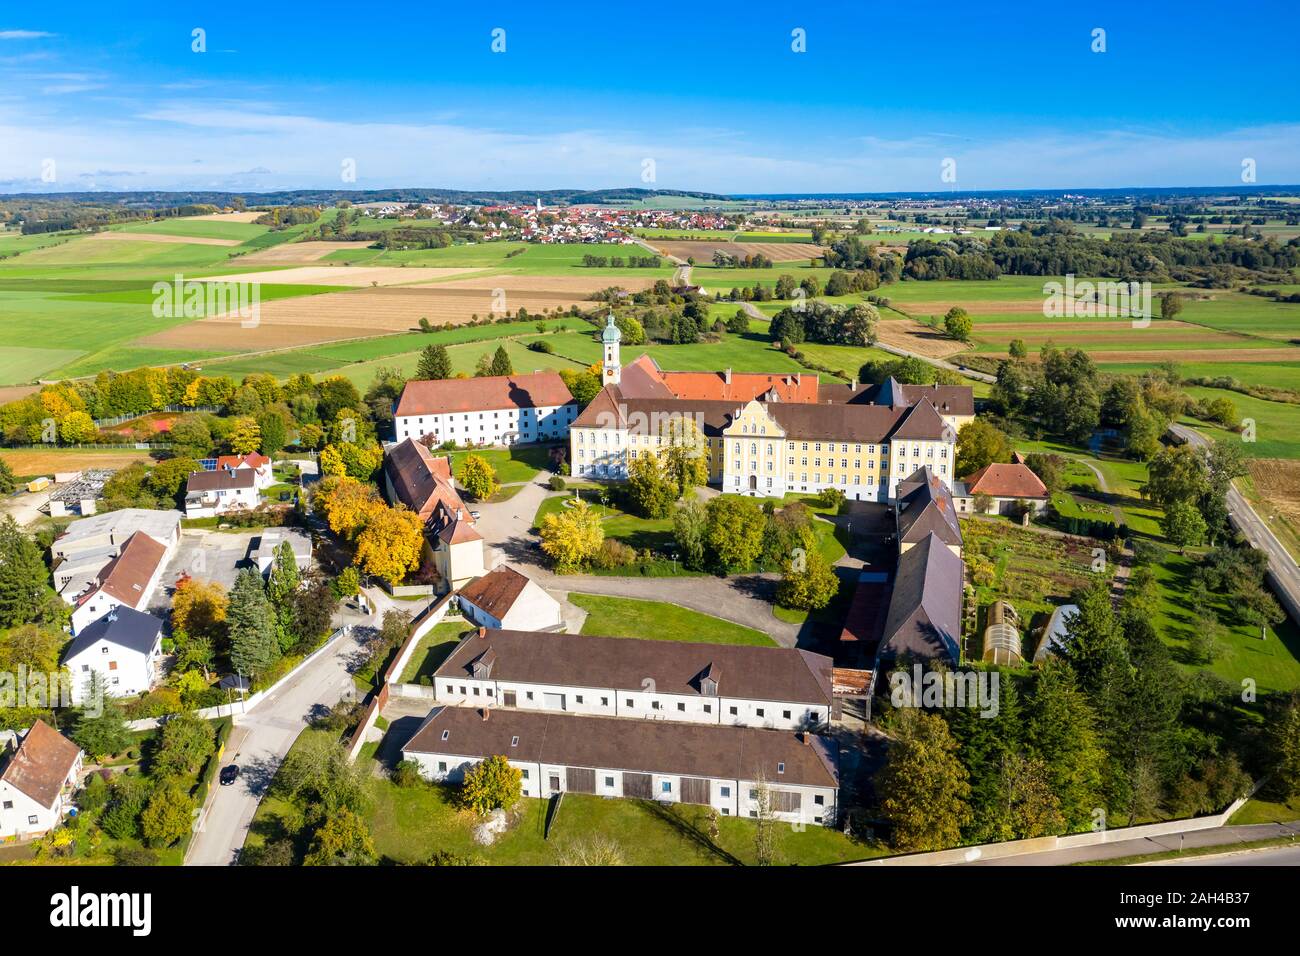 Alemania, Baviera, Augsburg, vista aérea del monasterio Modingen Foto de stock